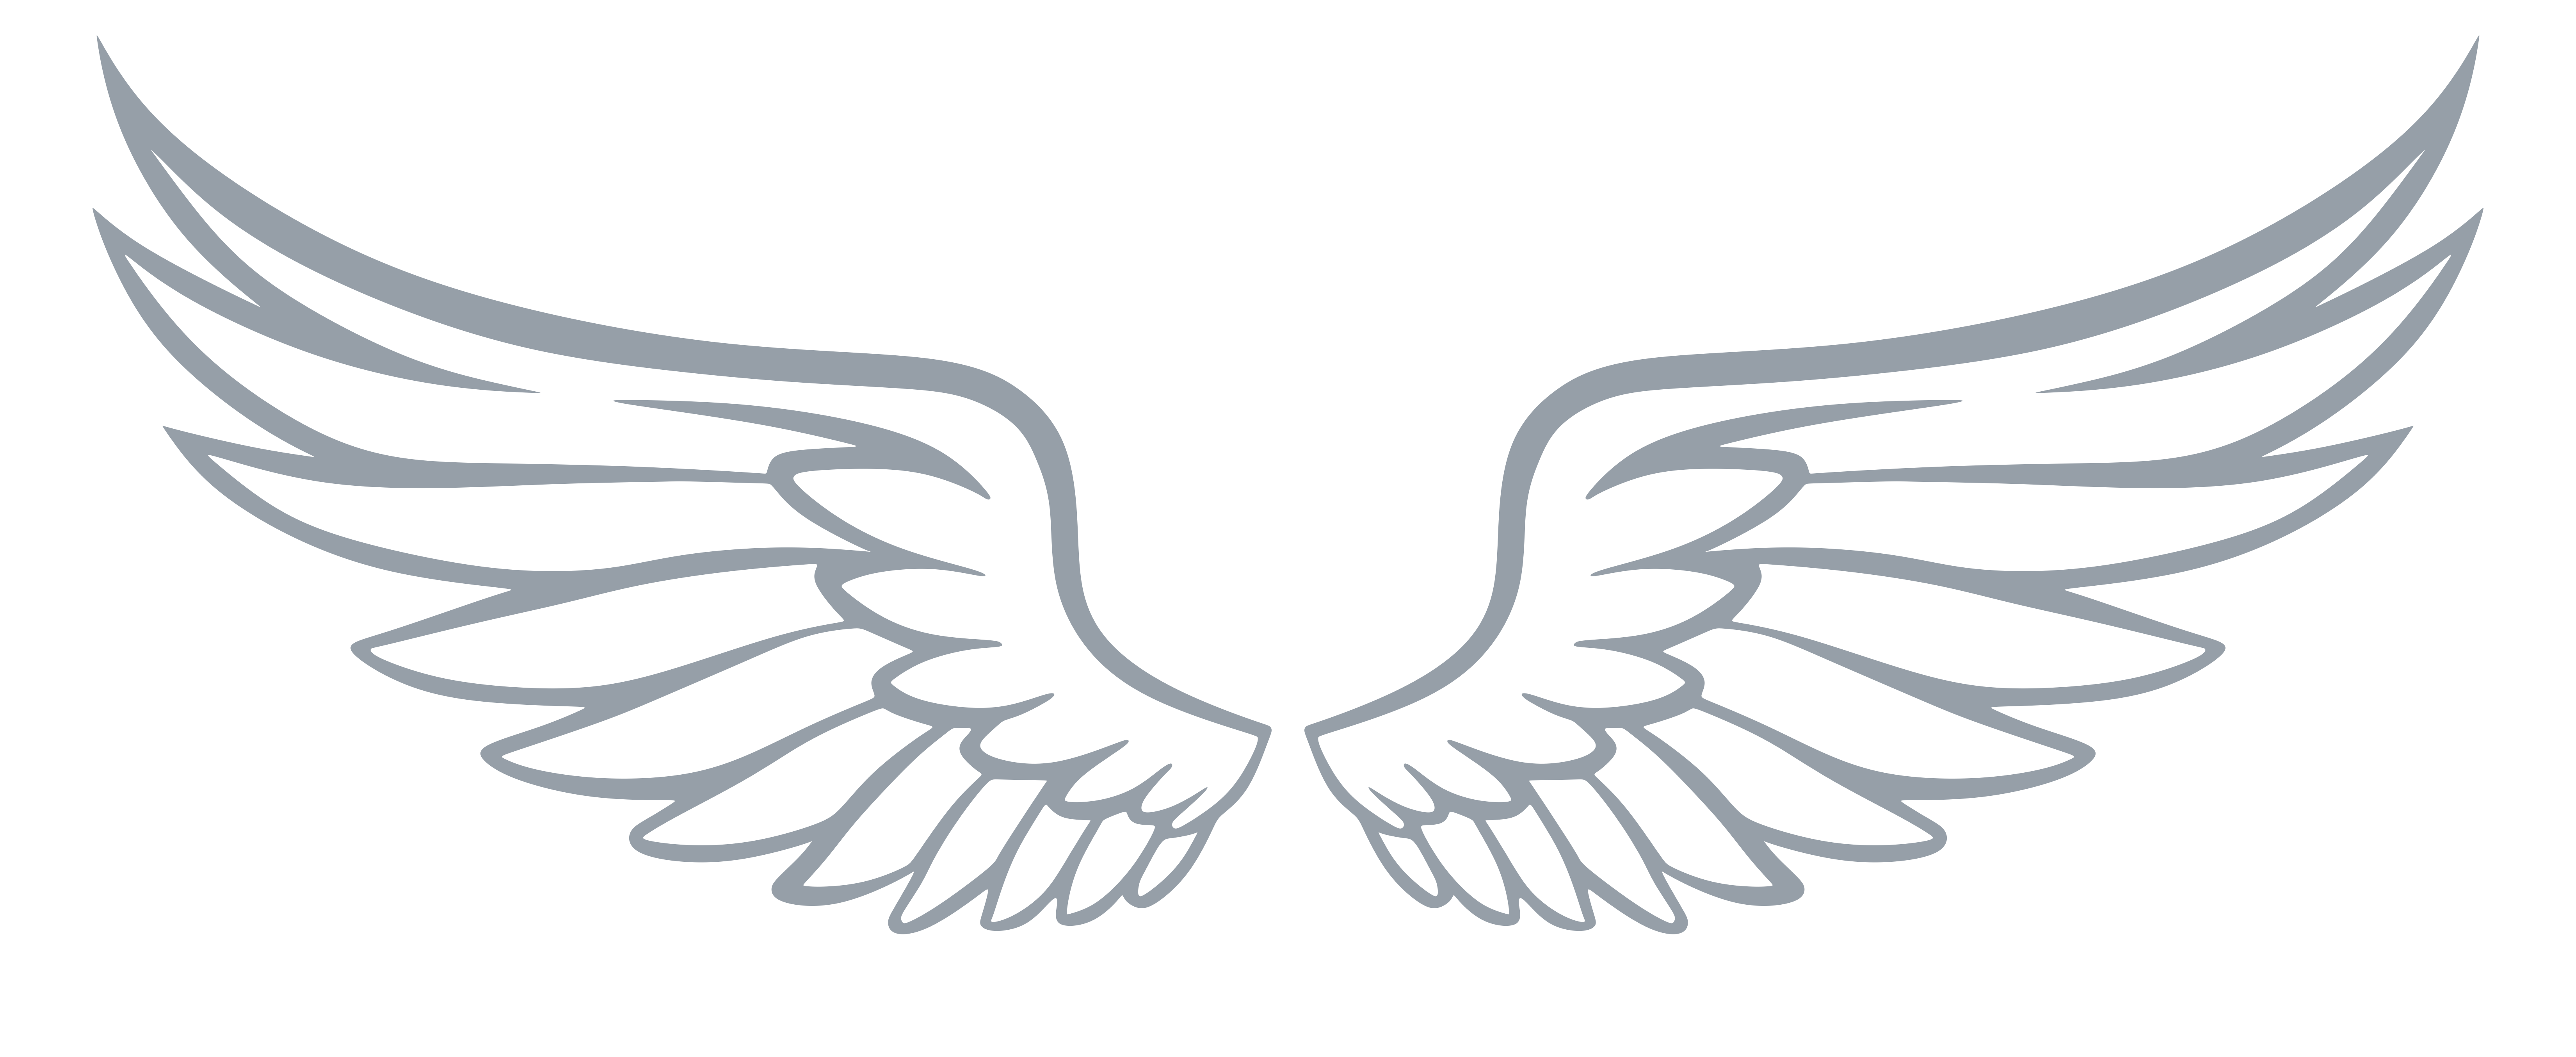 NLR-wings-grey